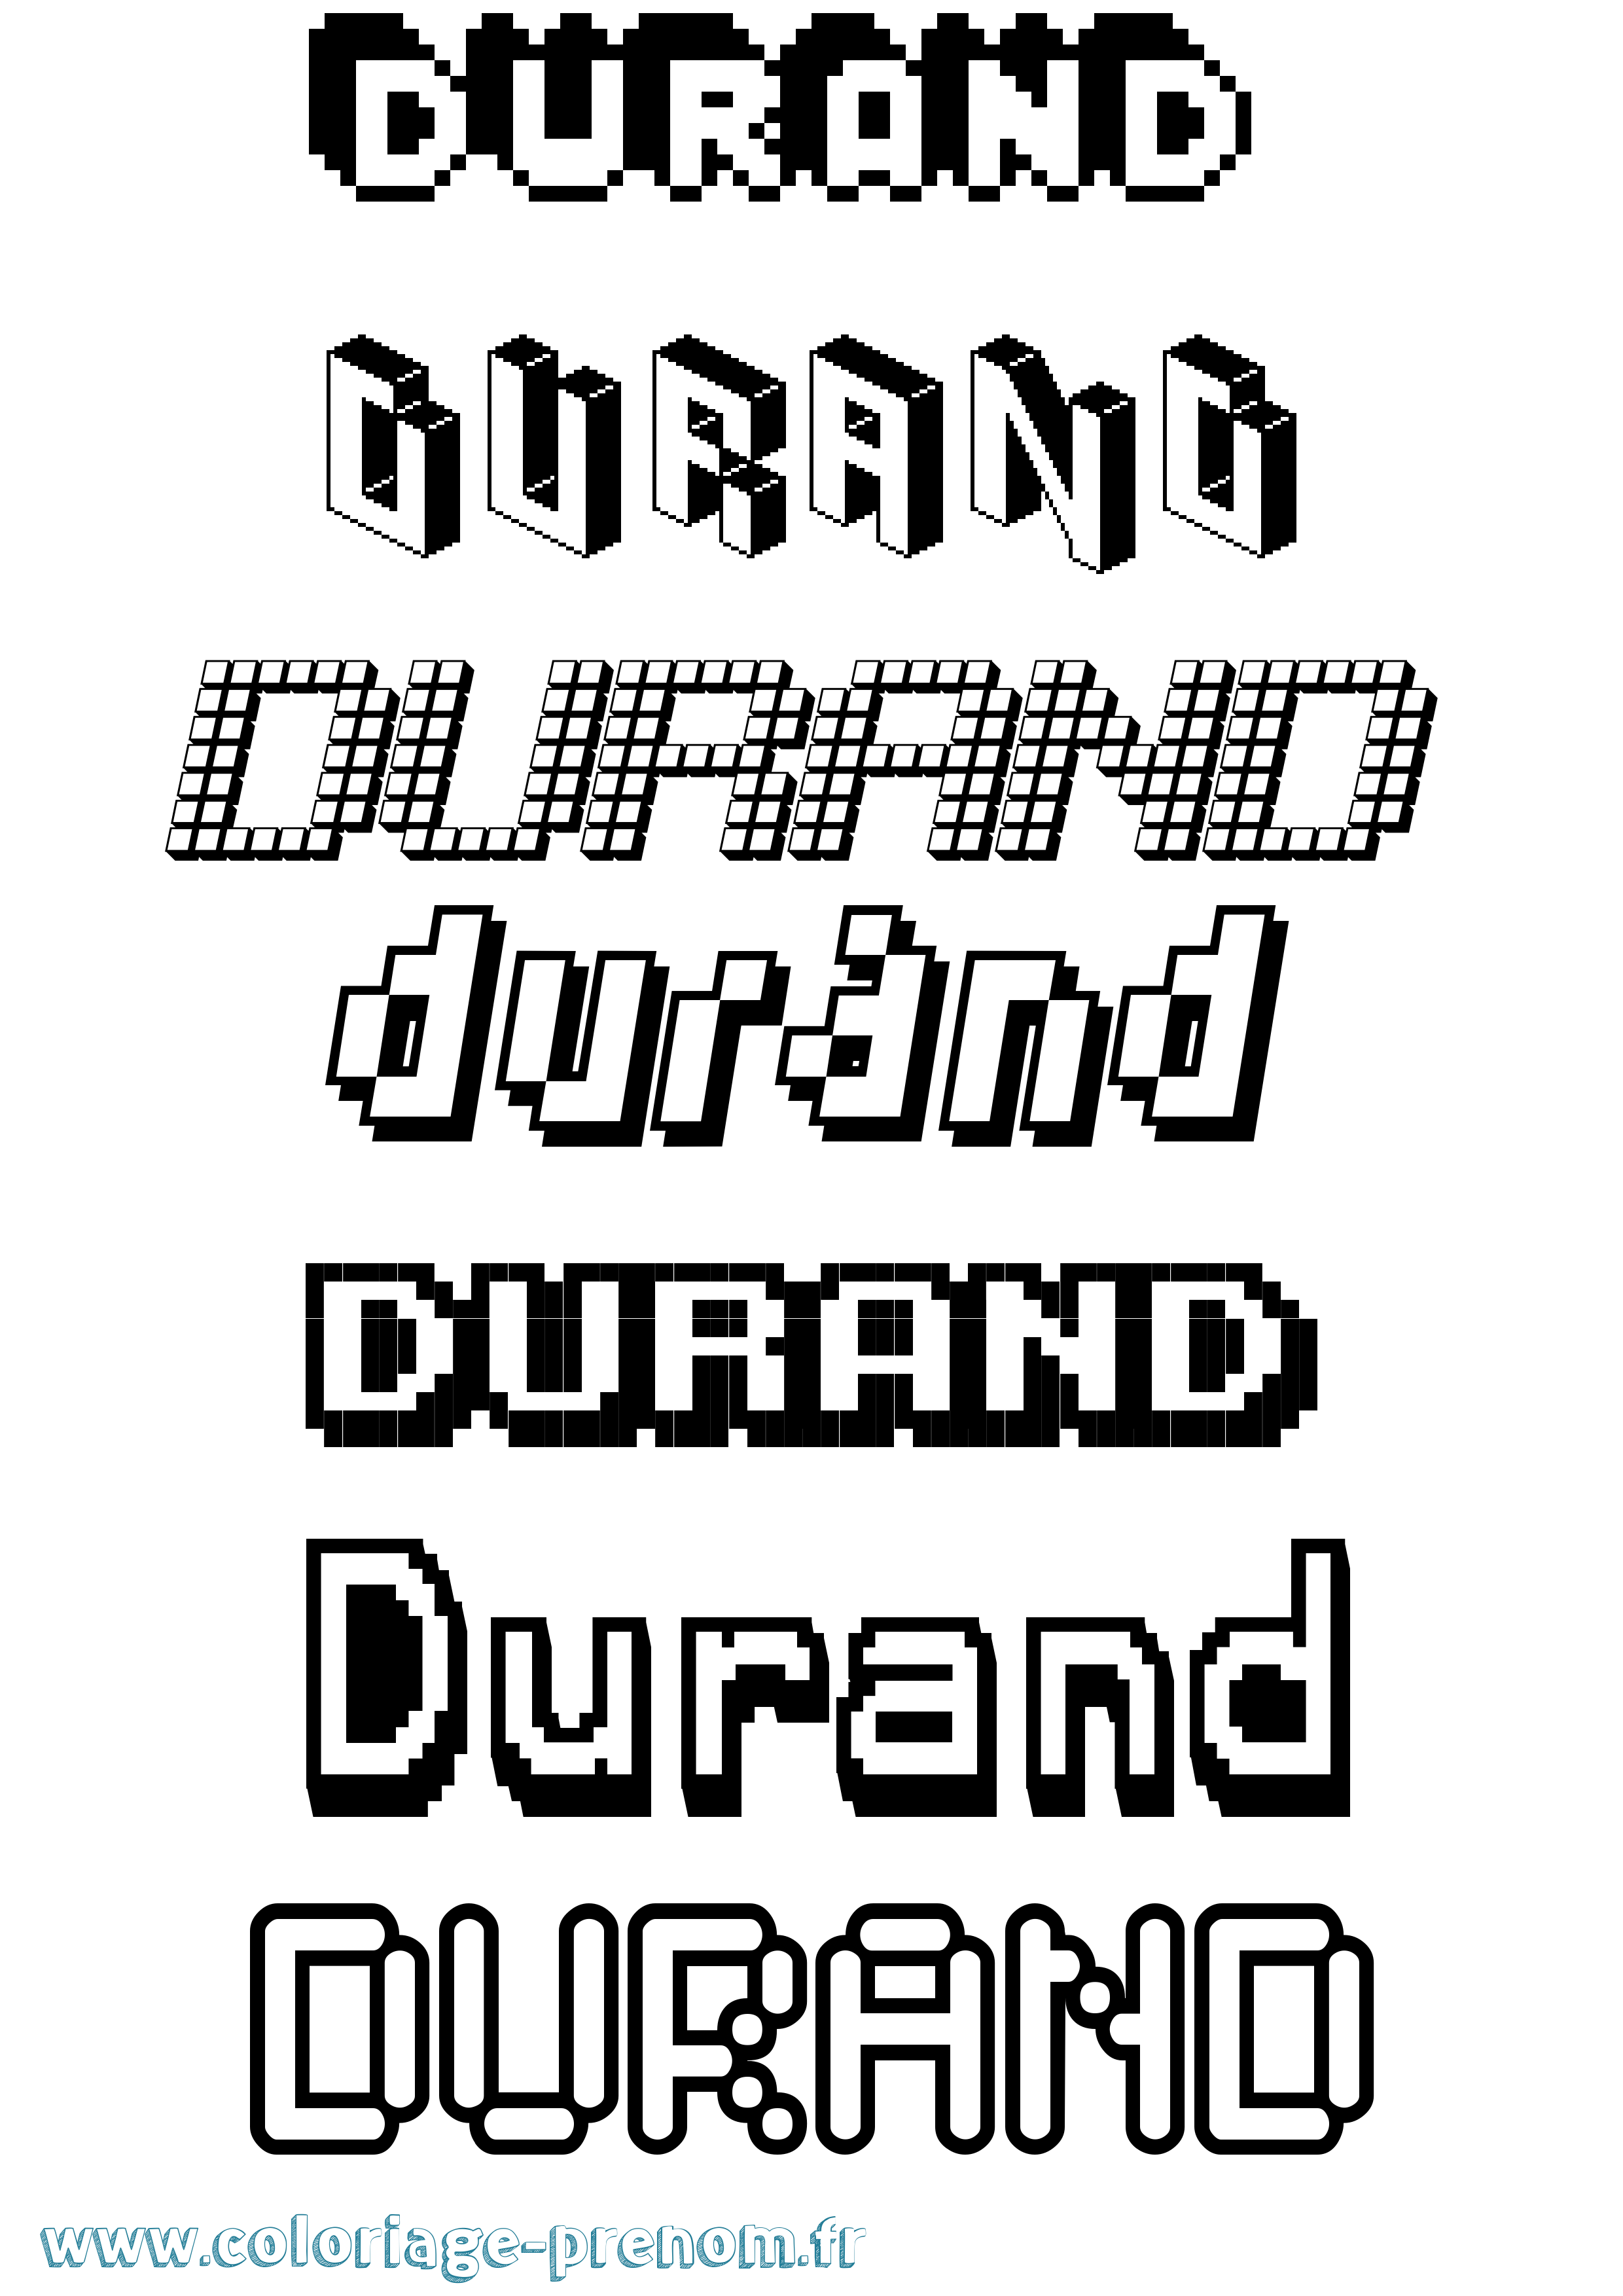 Coloriage prénom Durand Pixel